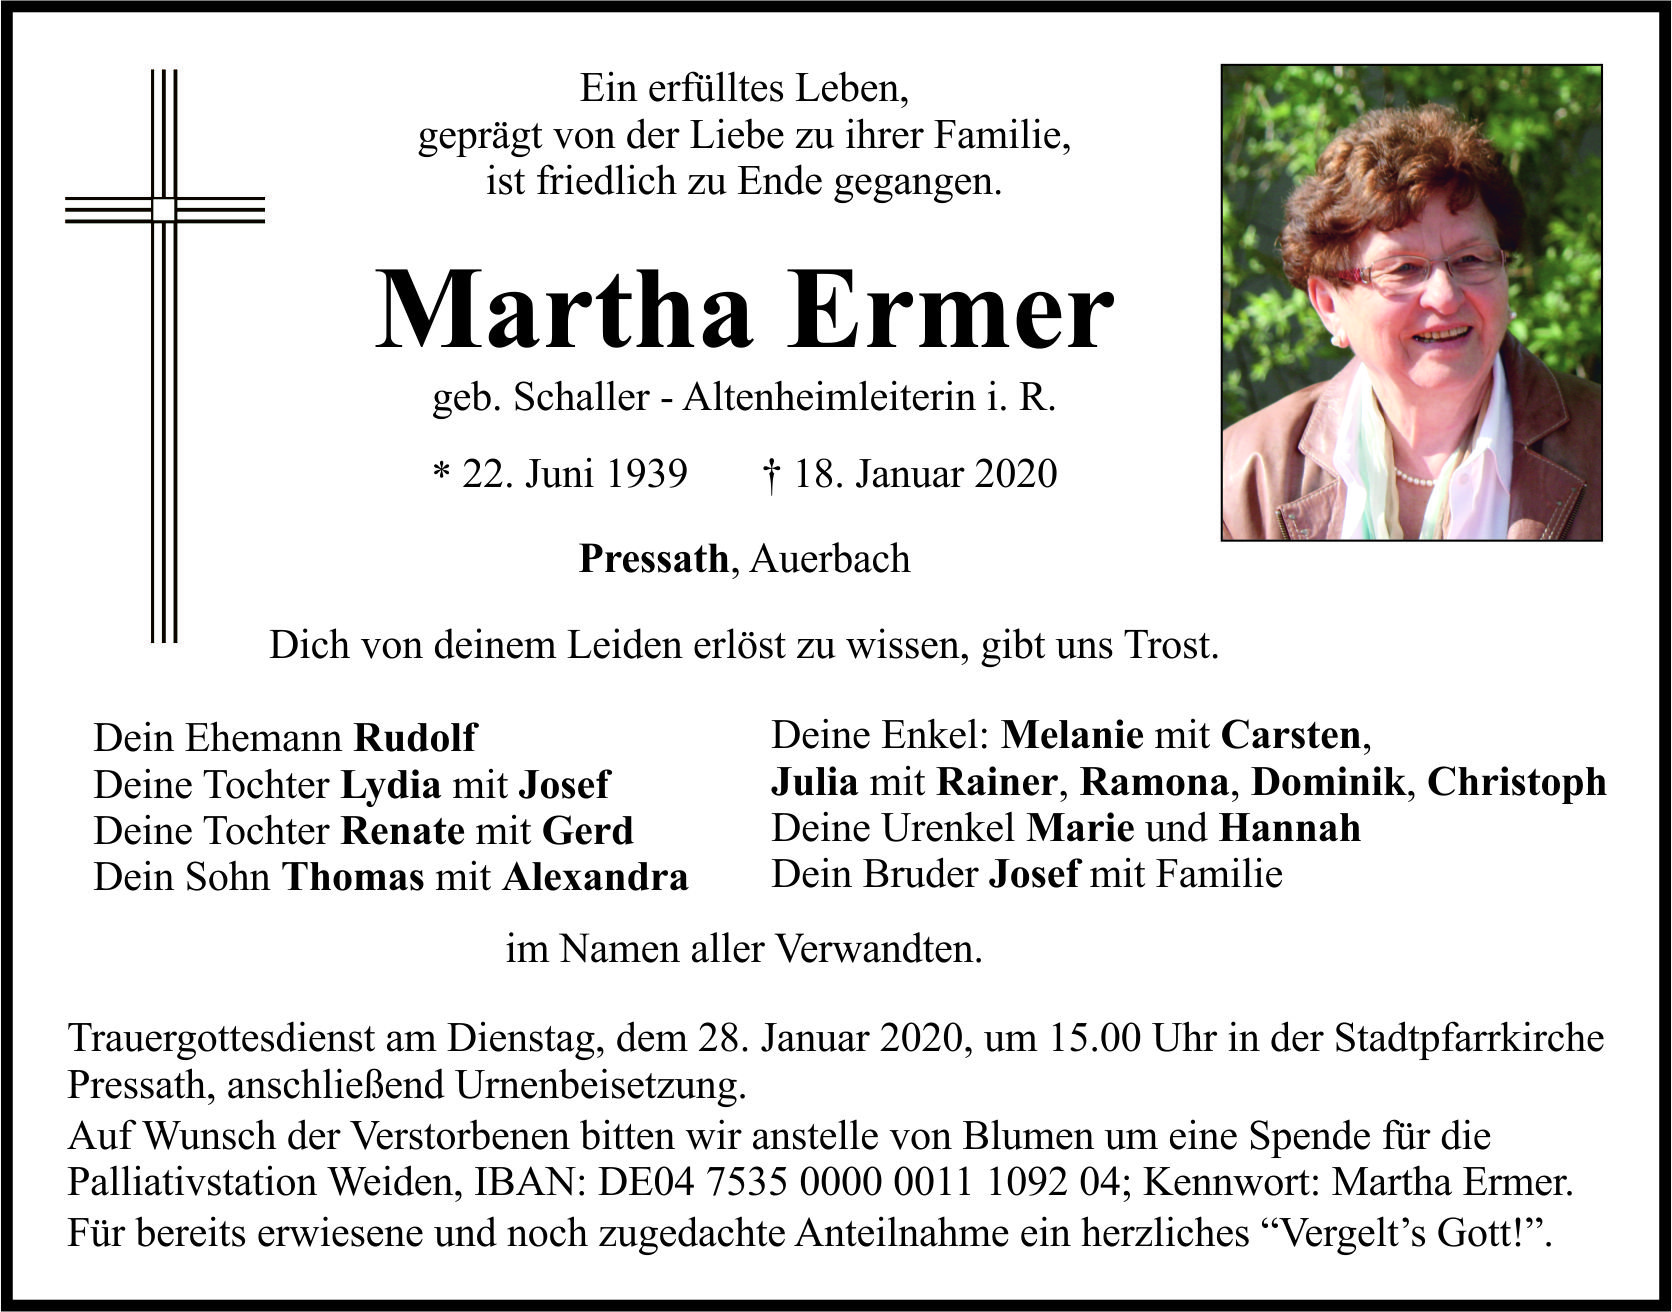 Traueranzeige Martha Ermer, Pressath